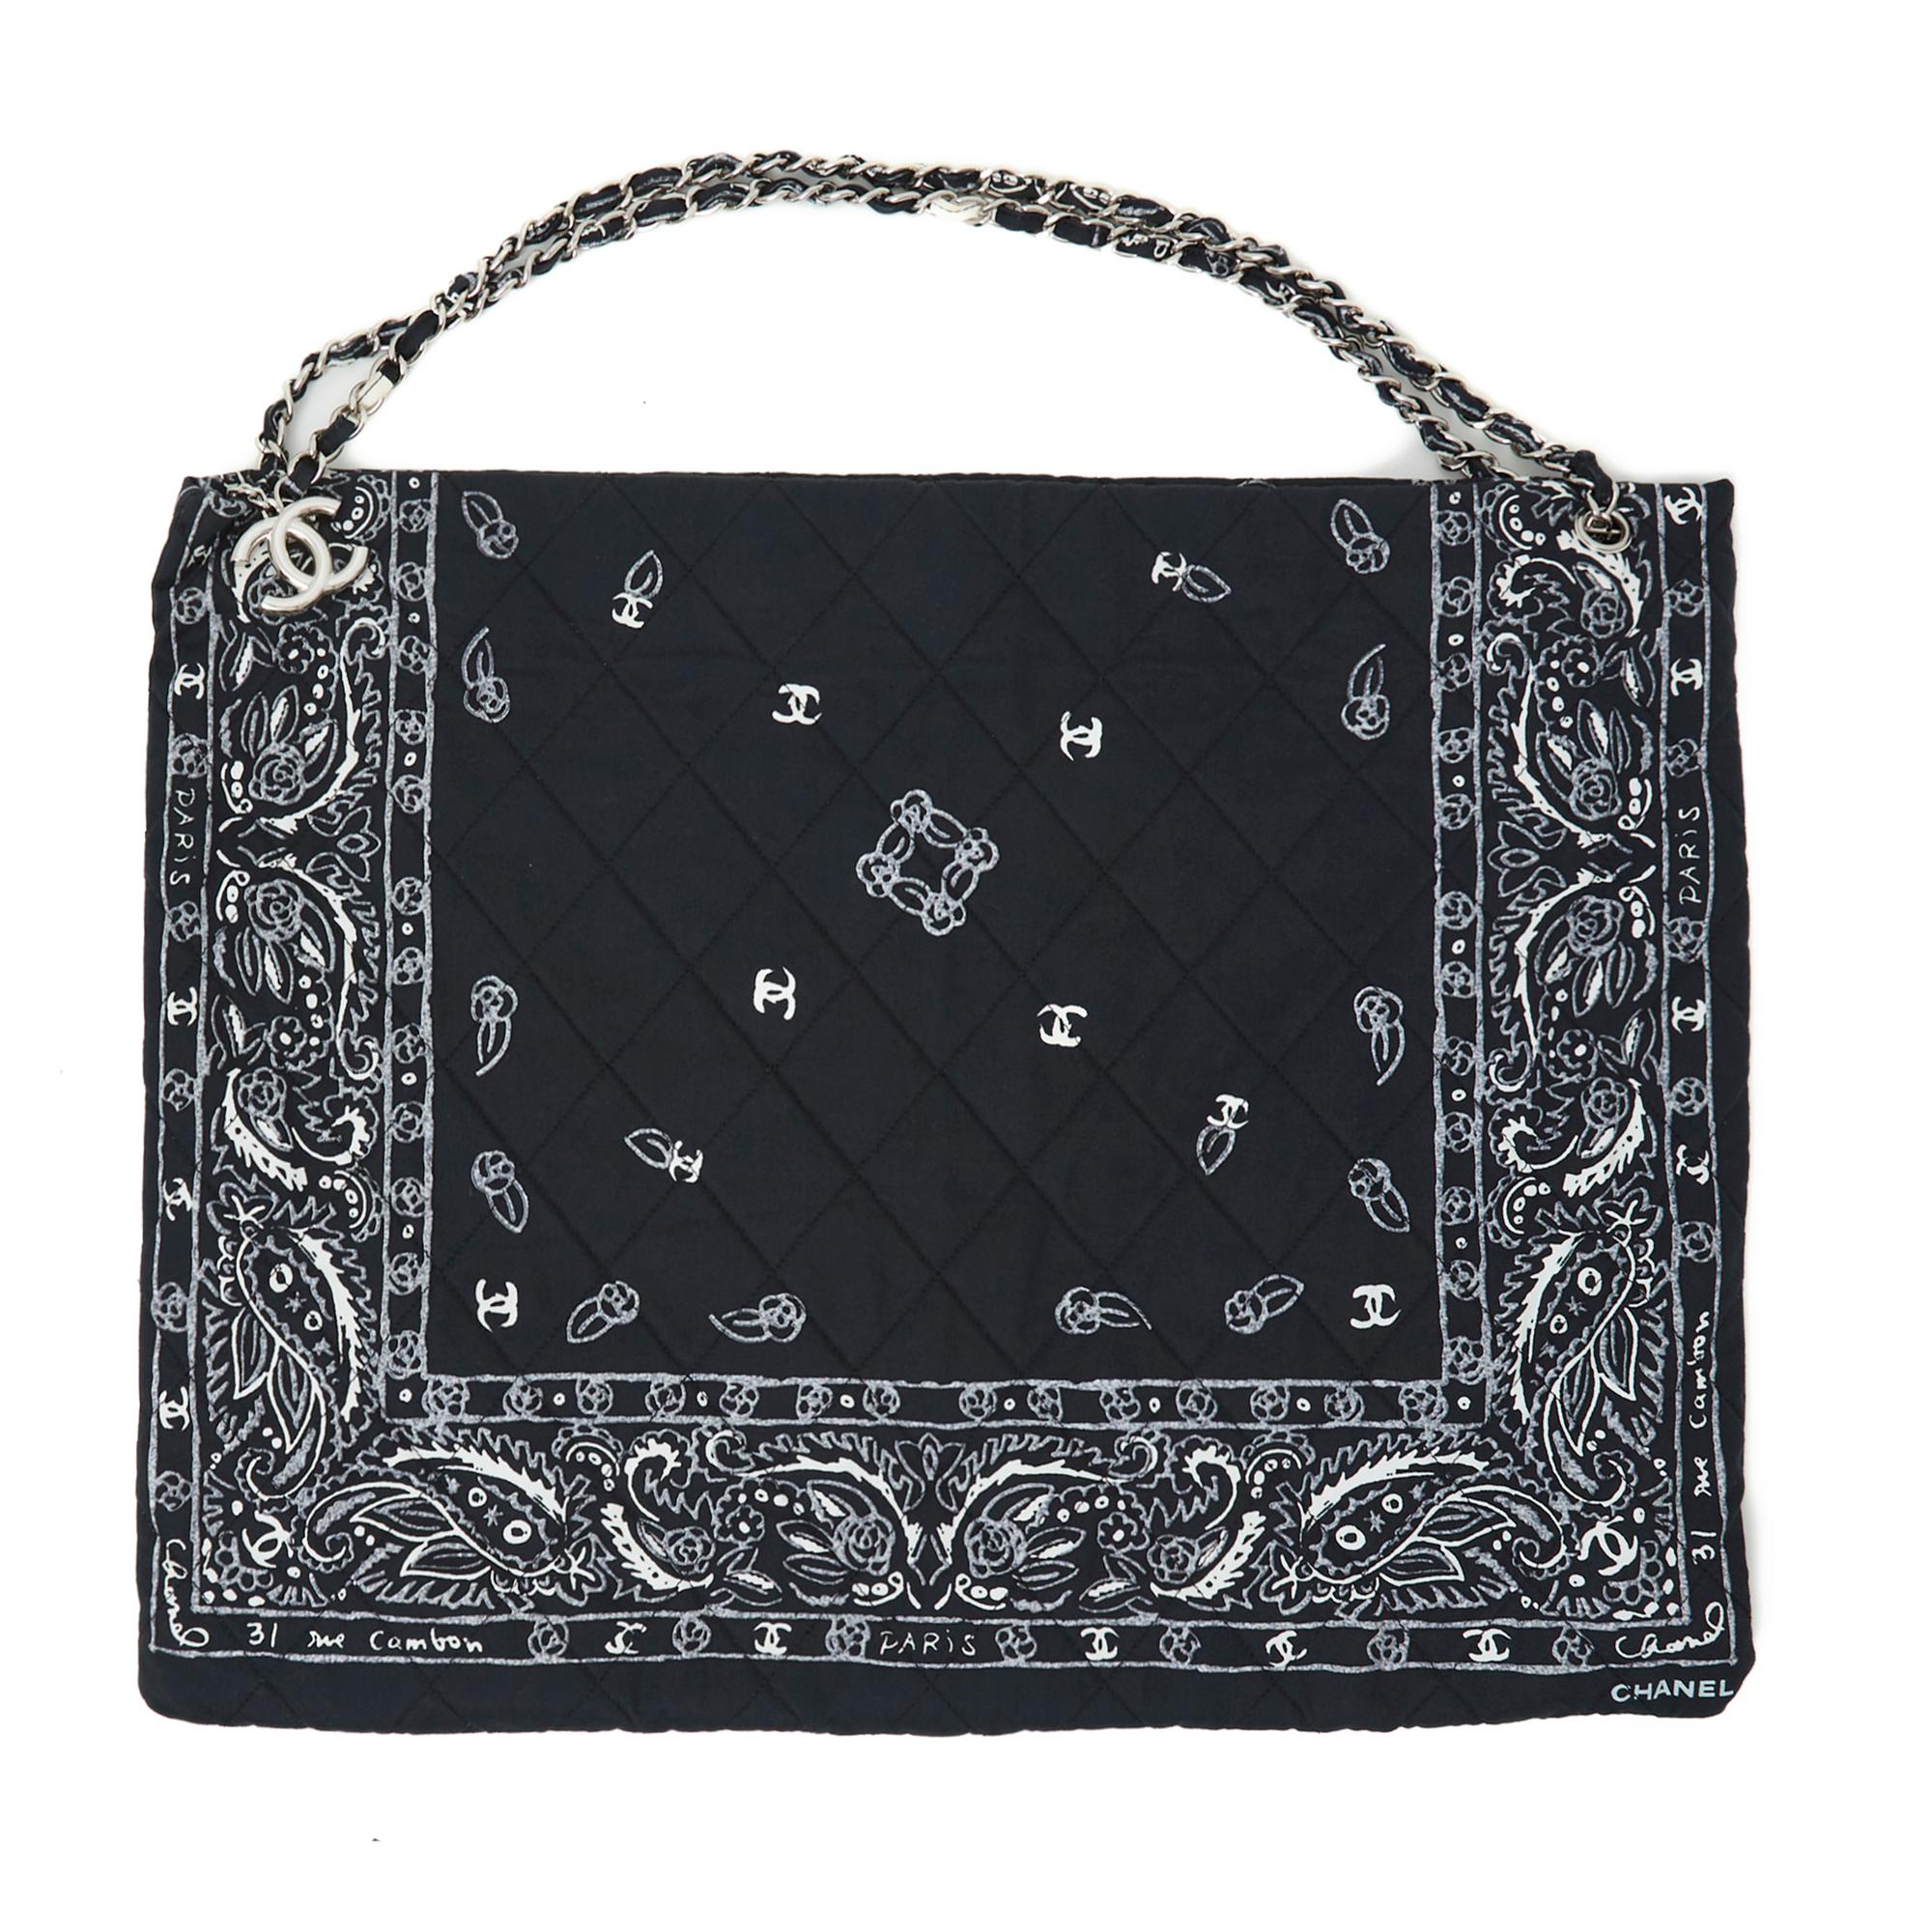 Chanel Tasche in schwarzem gesteppten Leinwand, Chanel-Stil Bandana gedruckt Muster mit CC, Haus-Adresse um den Rand, Logo, innen in schwarzem Segeltuch mit einer sehr großen Reißverschlusstasche und einem schwarzen Leder-Schlüssel Link mit einem